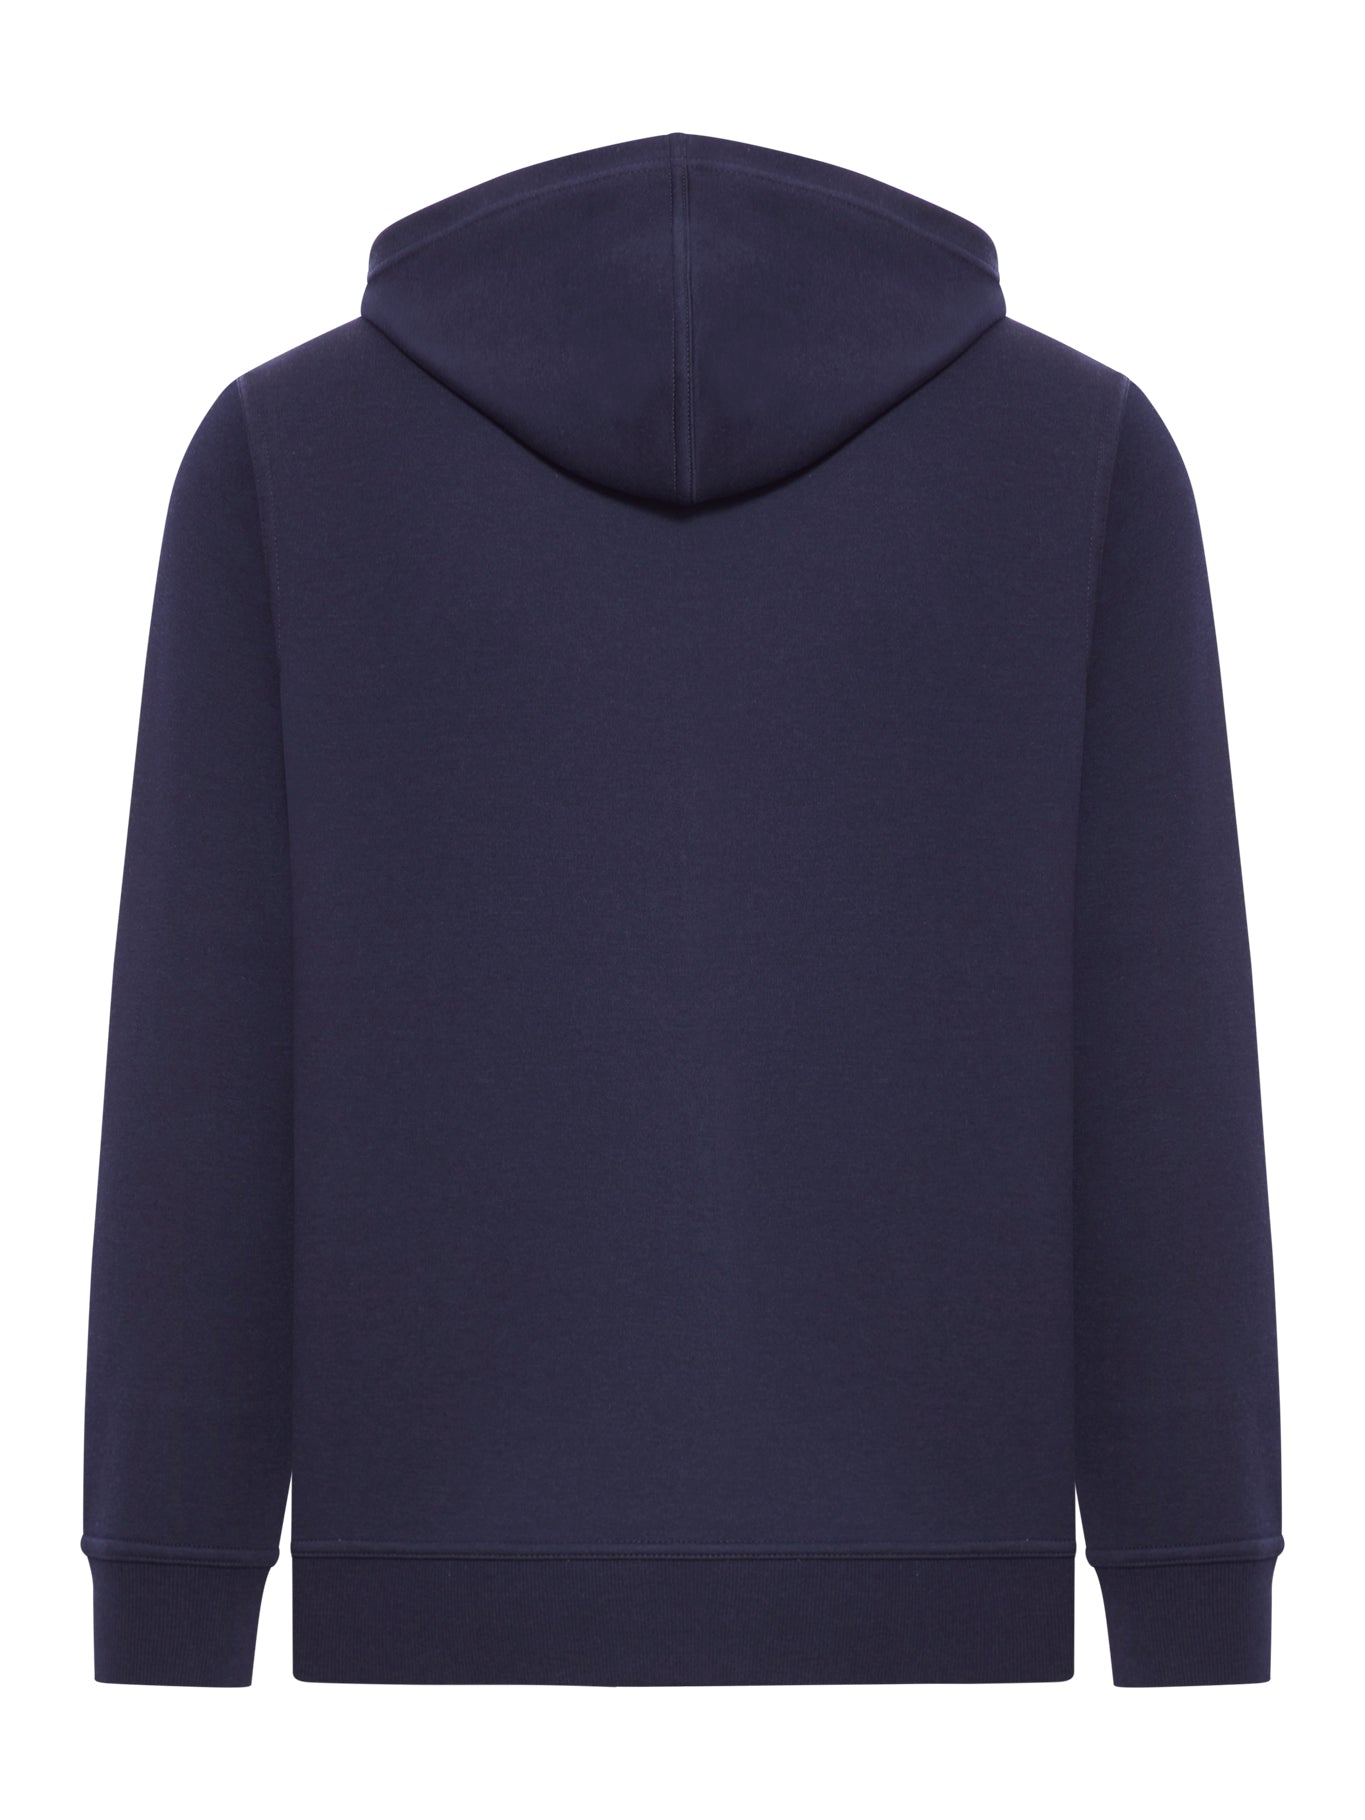 Brunello Cucinelli sweatshirt in cotton and cashmere